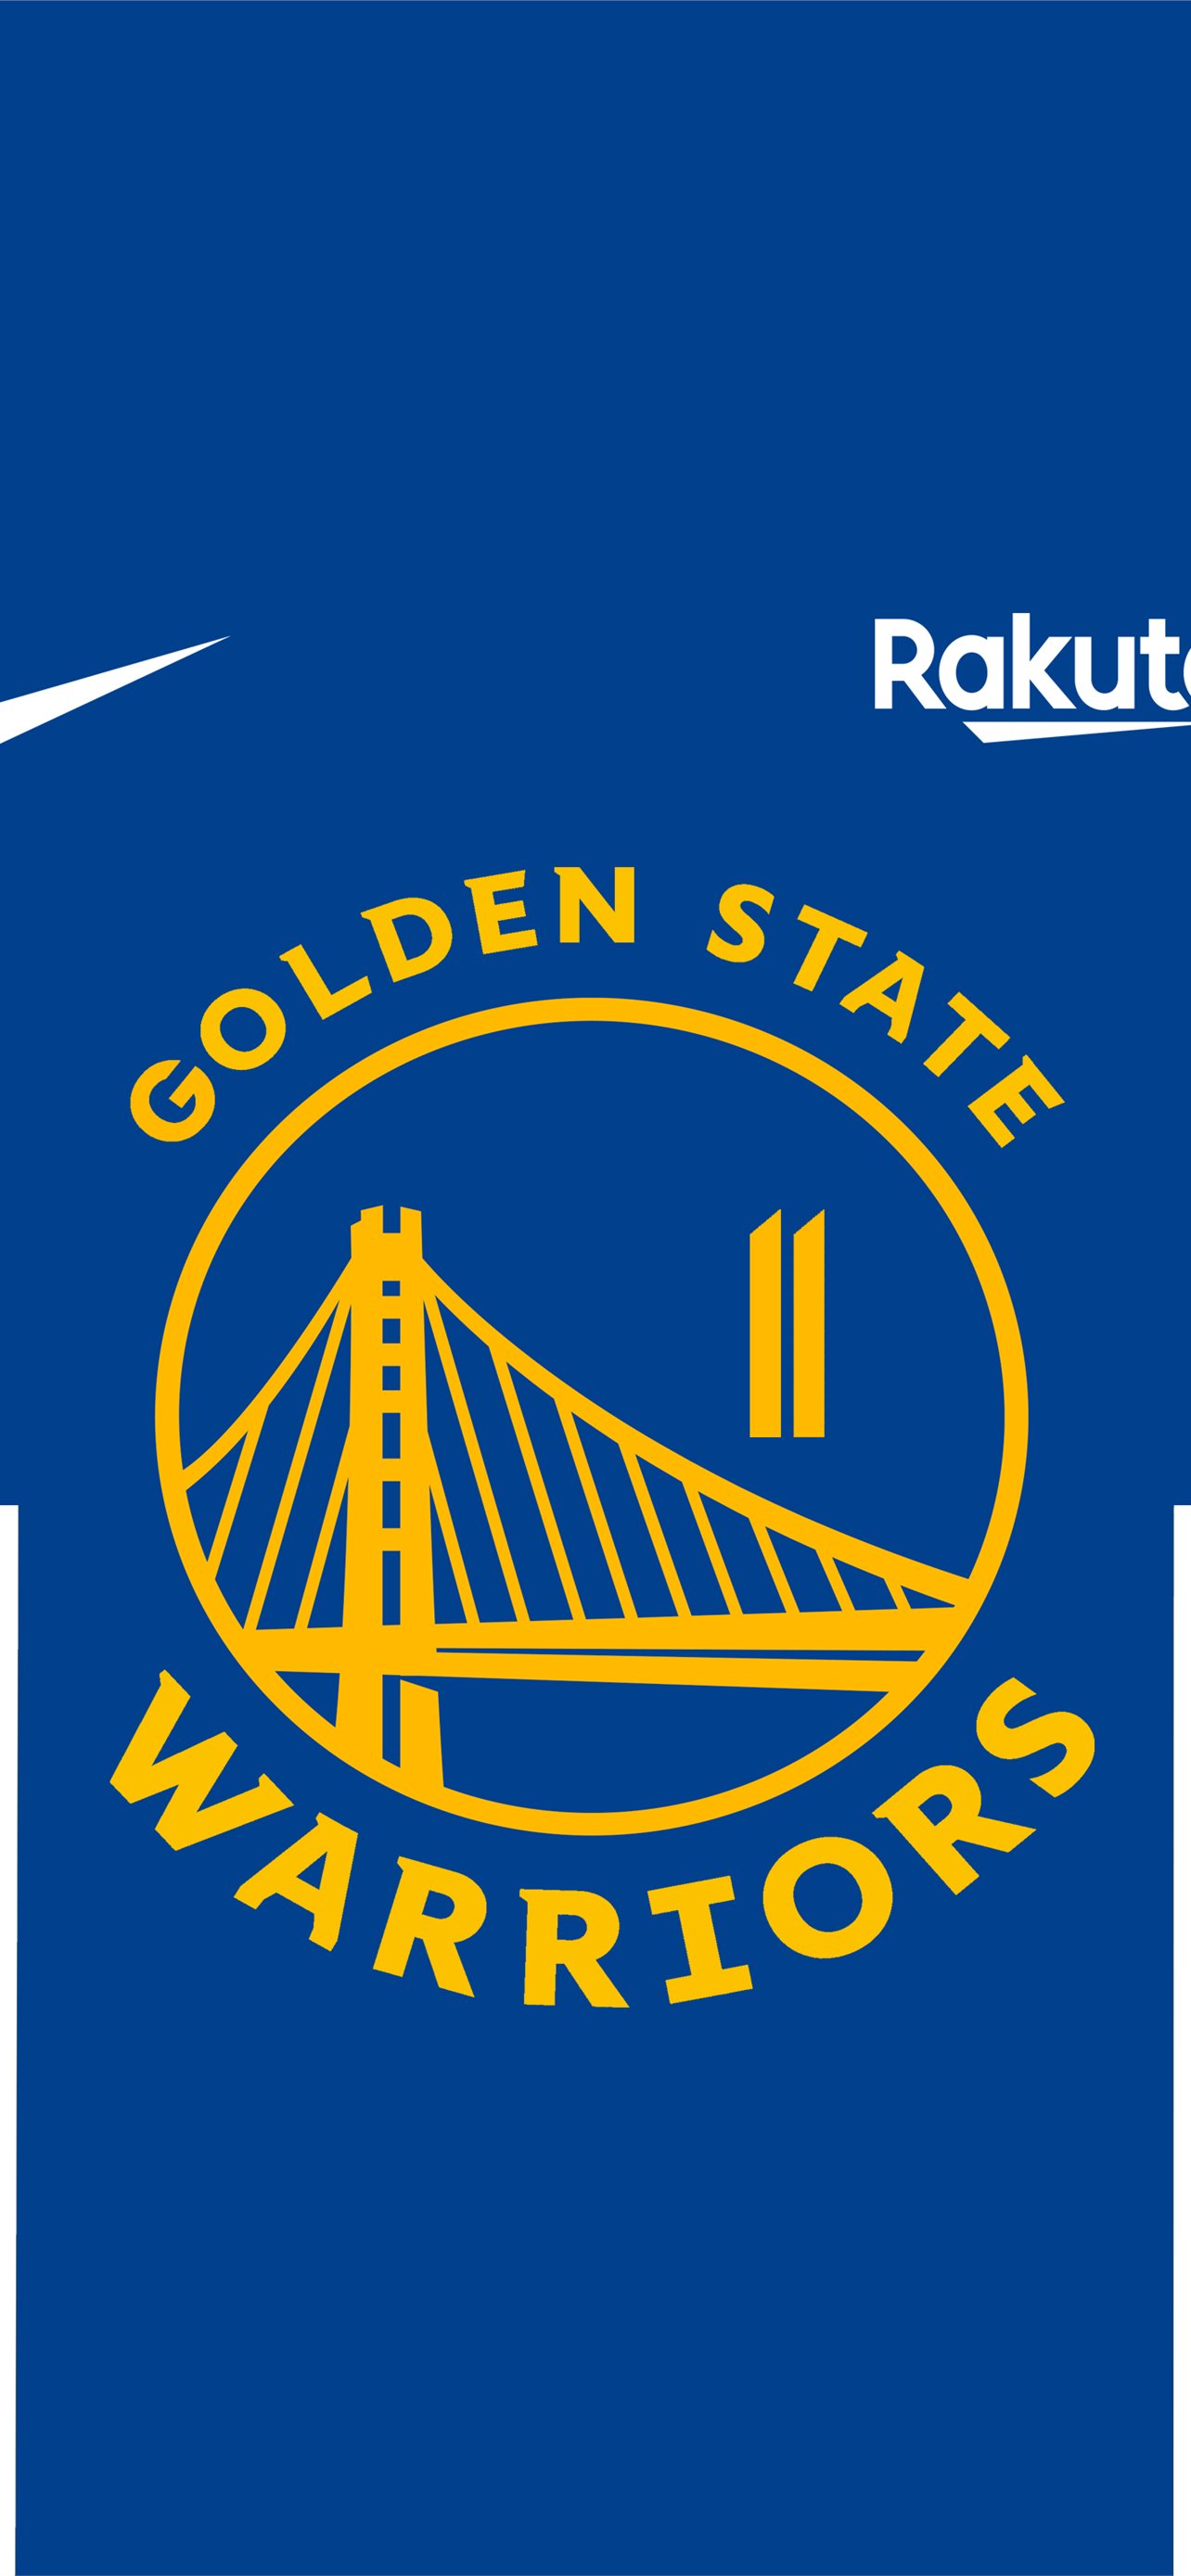 Golden State Warriors Logo Papel de parede foto compartilhado por Raff19   Português de partilha de imagens imagens